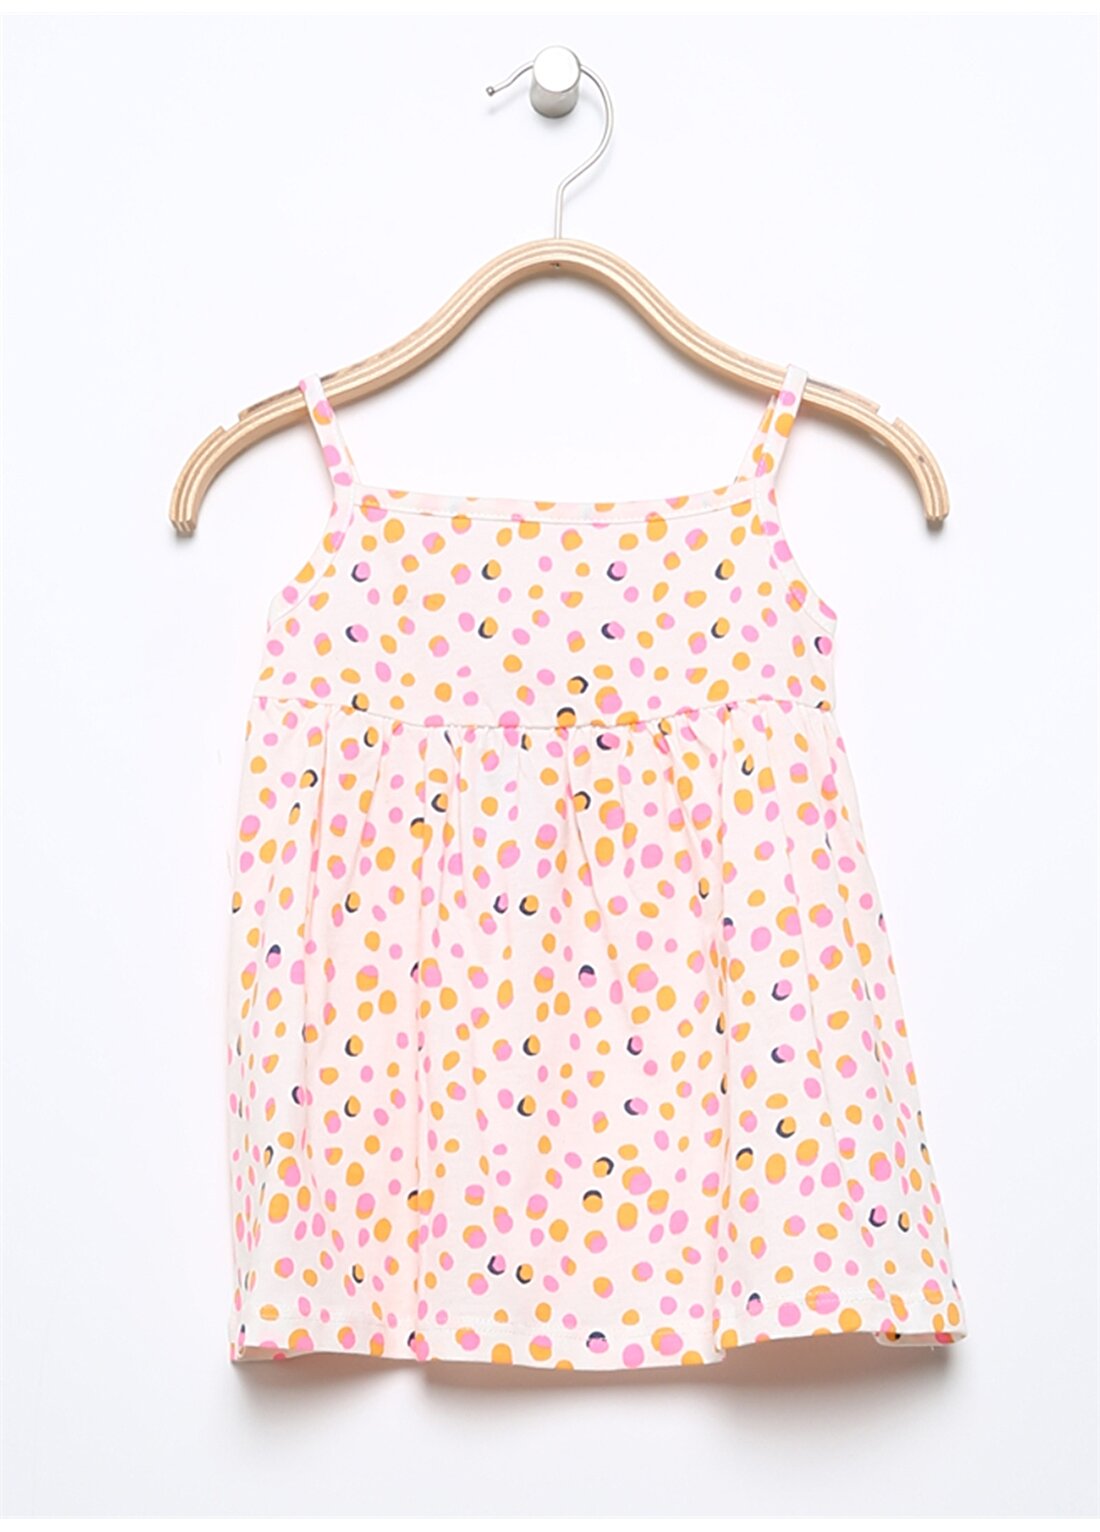 Mammaramma Çok Renkli Kız Bebek Elbise HG-01